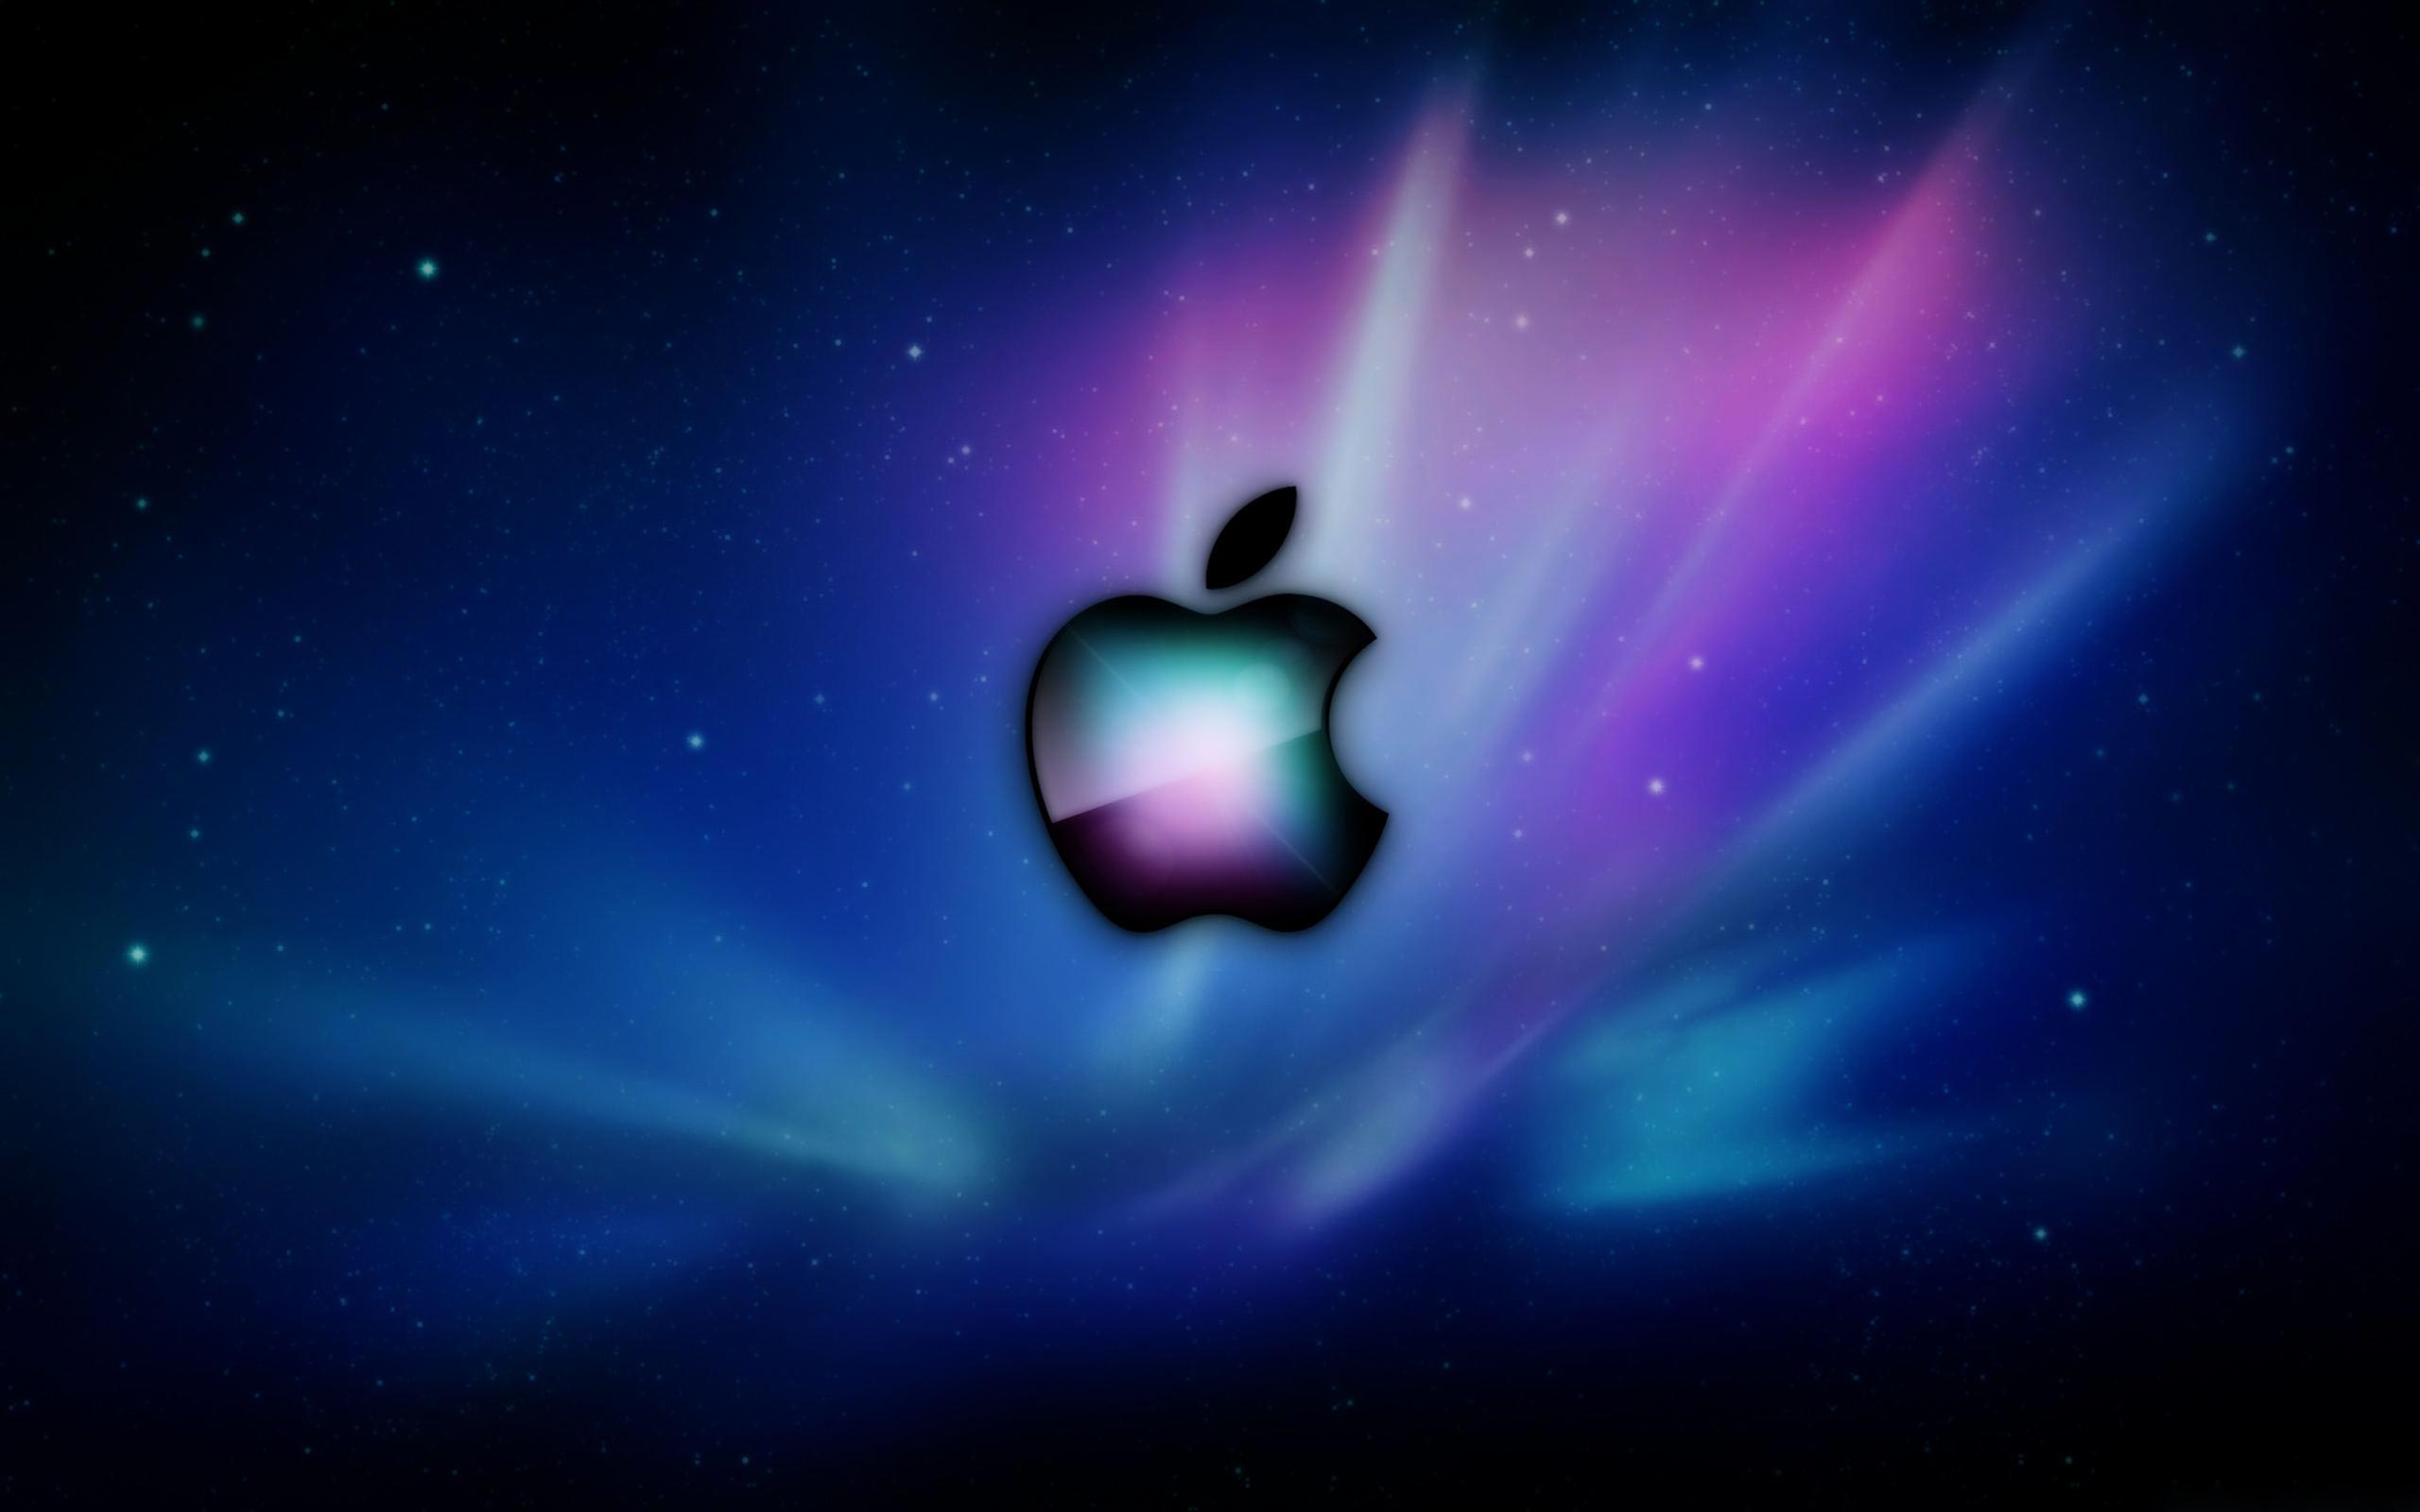 for apple download OkMap Desktop 17.11